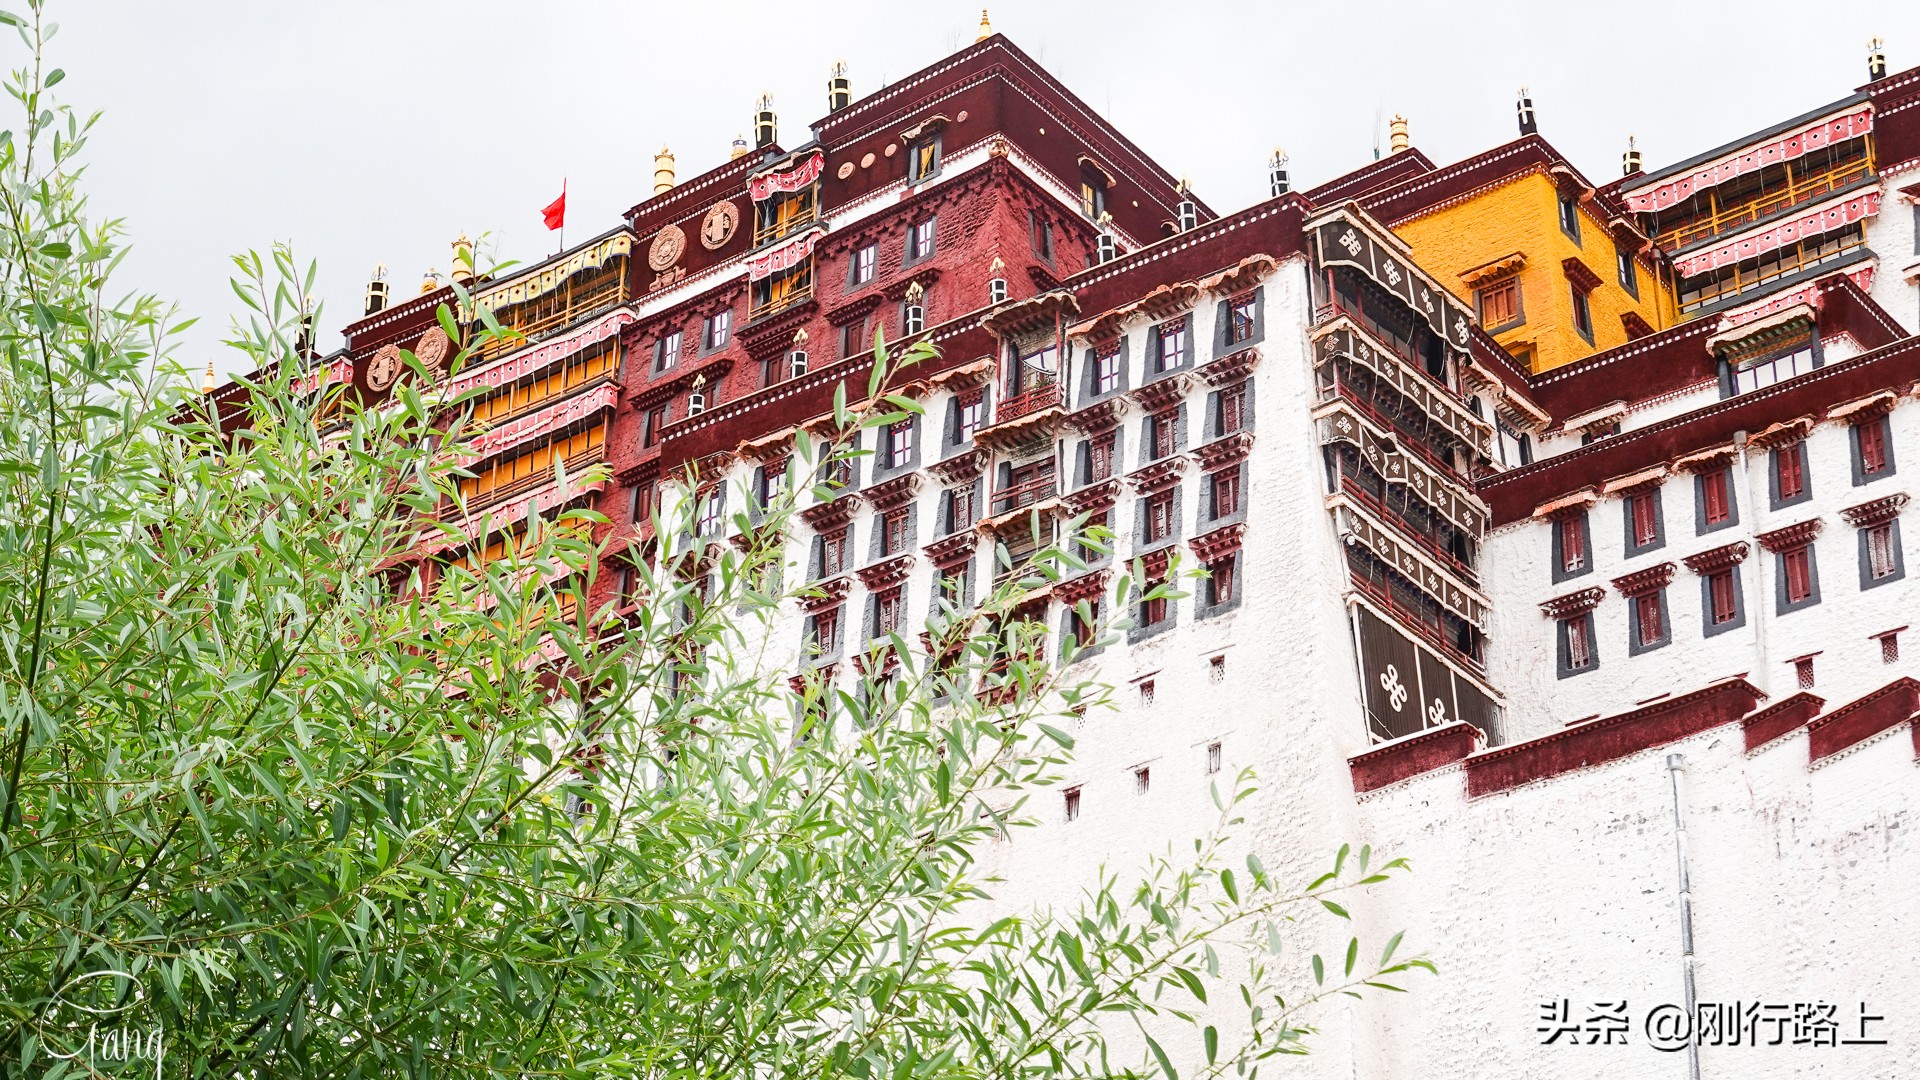 每一个人都有一个西藏梦，而这个梦的终点一定是布达拉宫